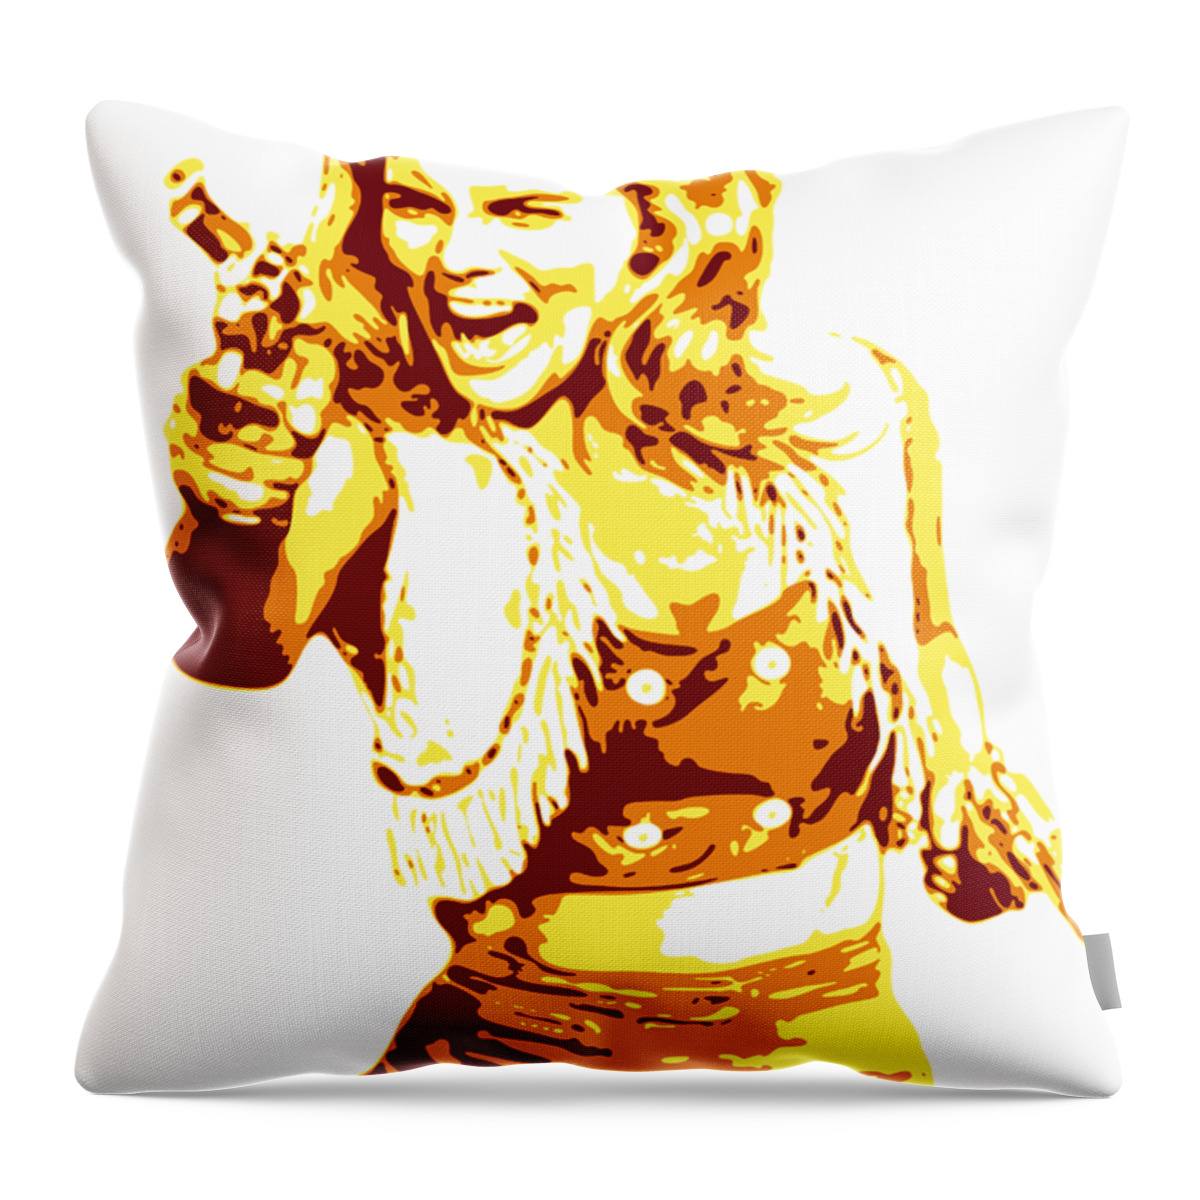 Ann Margret Throw Pillow featuring the digital art Ann Margret by DB Artist